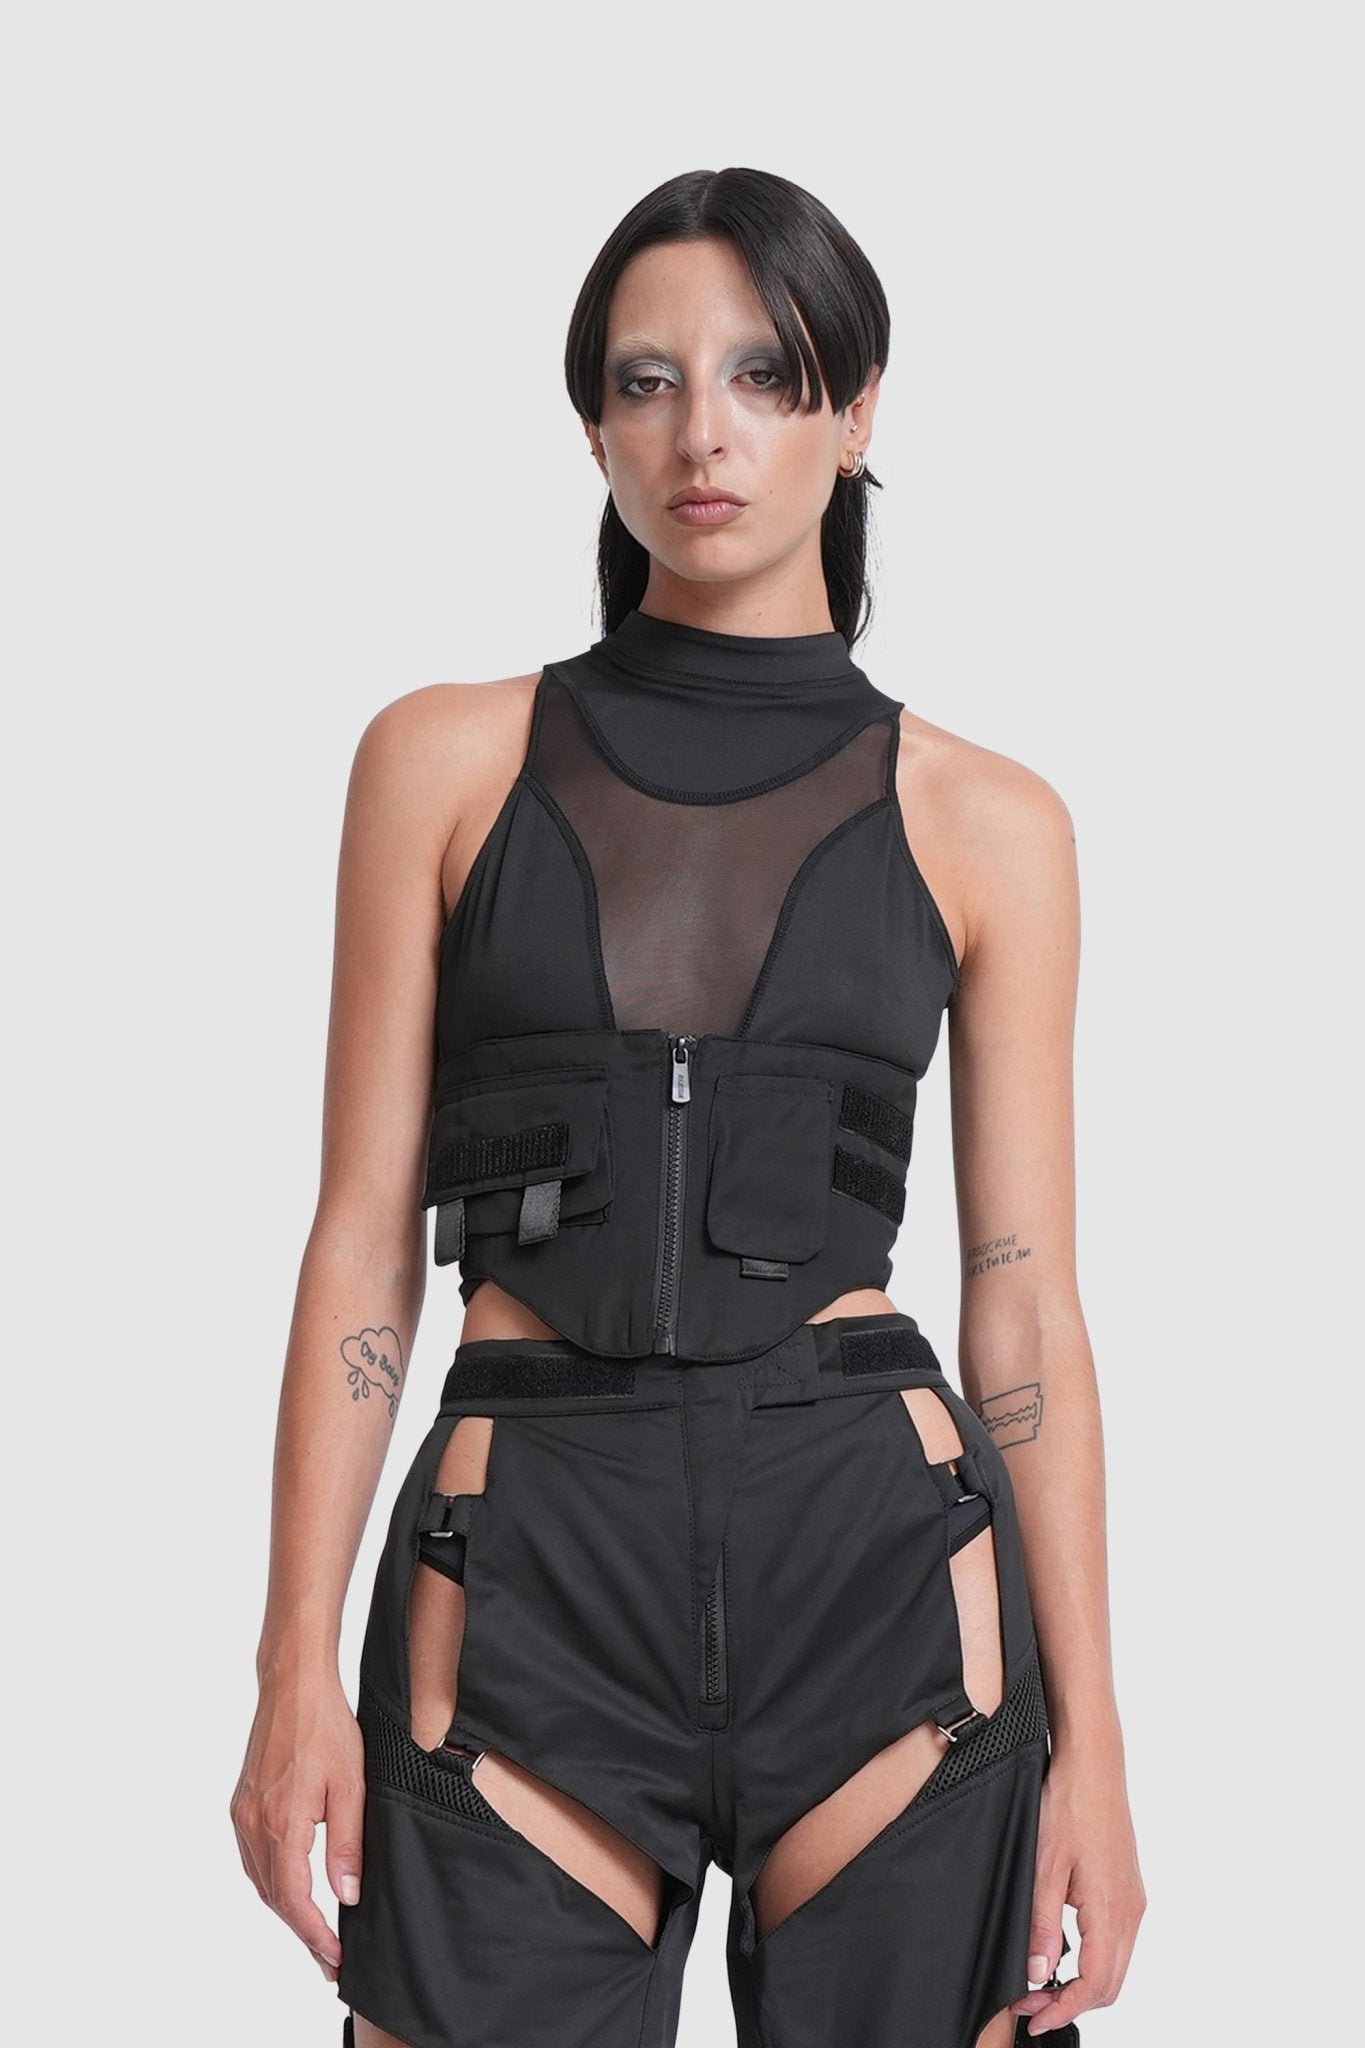 NAMILIA tactical corset top - XS, black